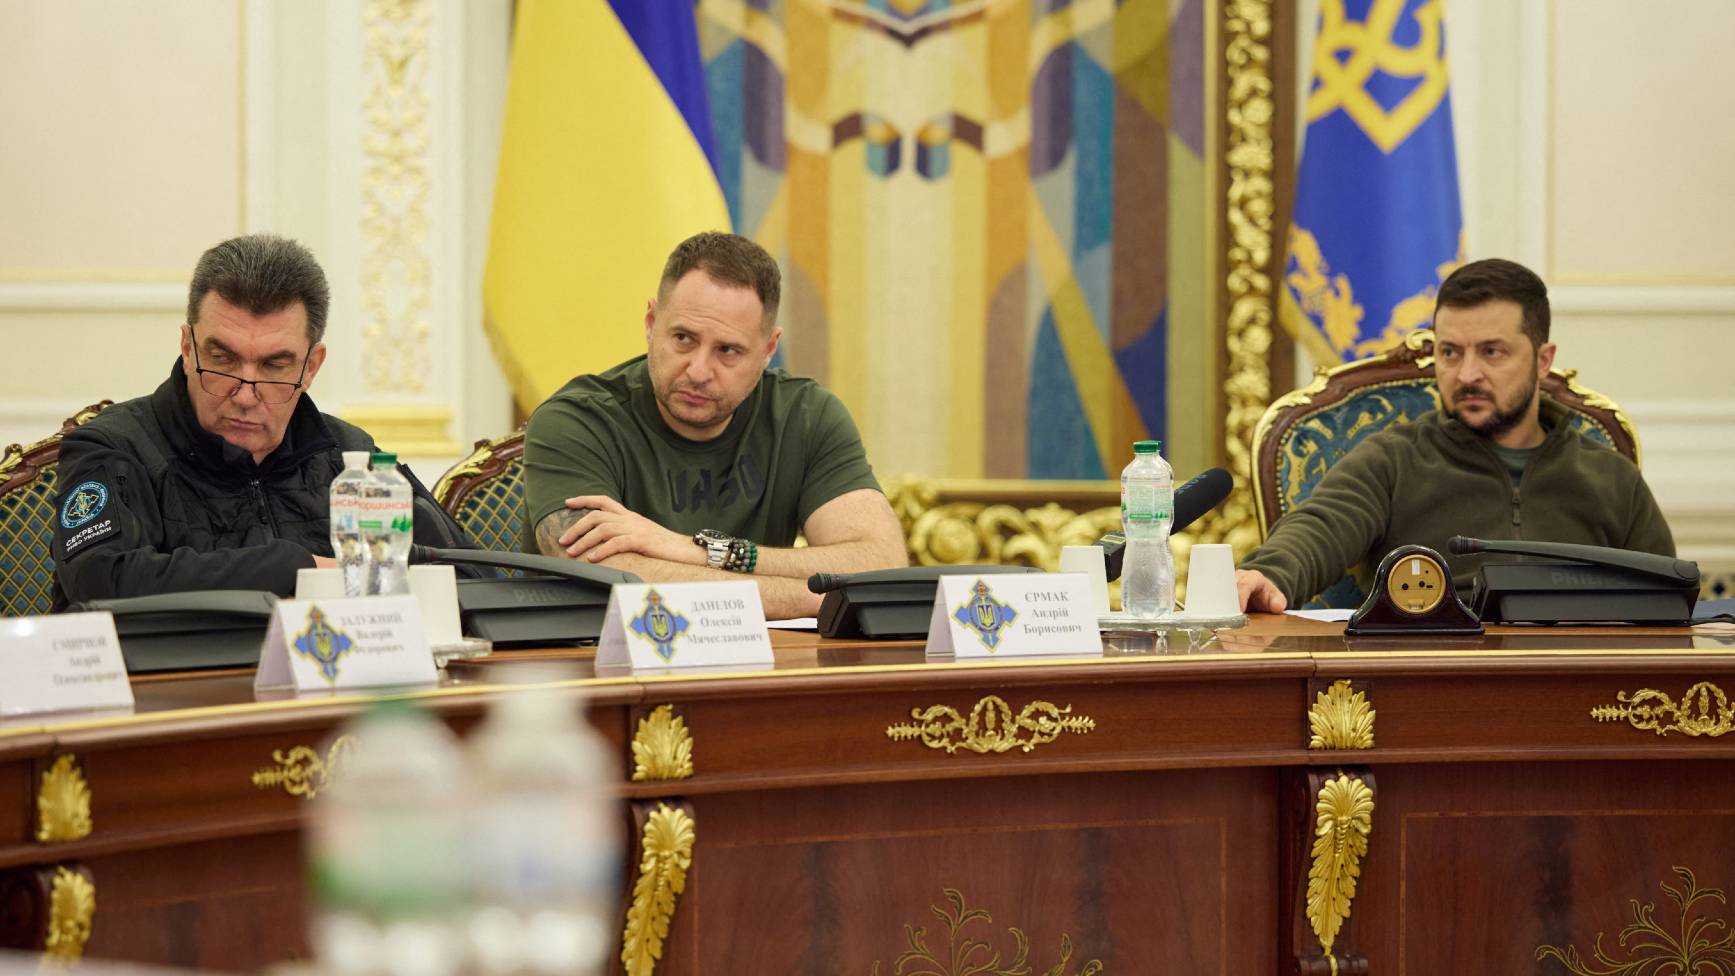 Președintele Ucrainei Volodymyr Zelensky (r) la o reuniune a Consiliului Național de Securitate și Apărare, vineri, la Kiev. /Presă prezidențială ucraineană